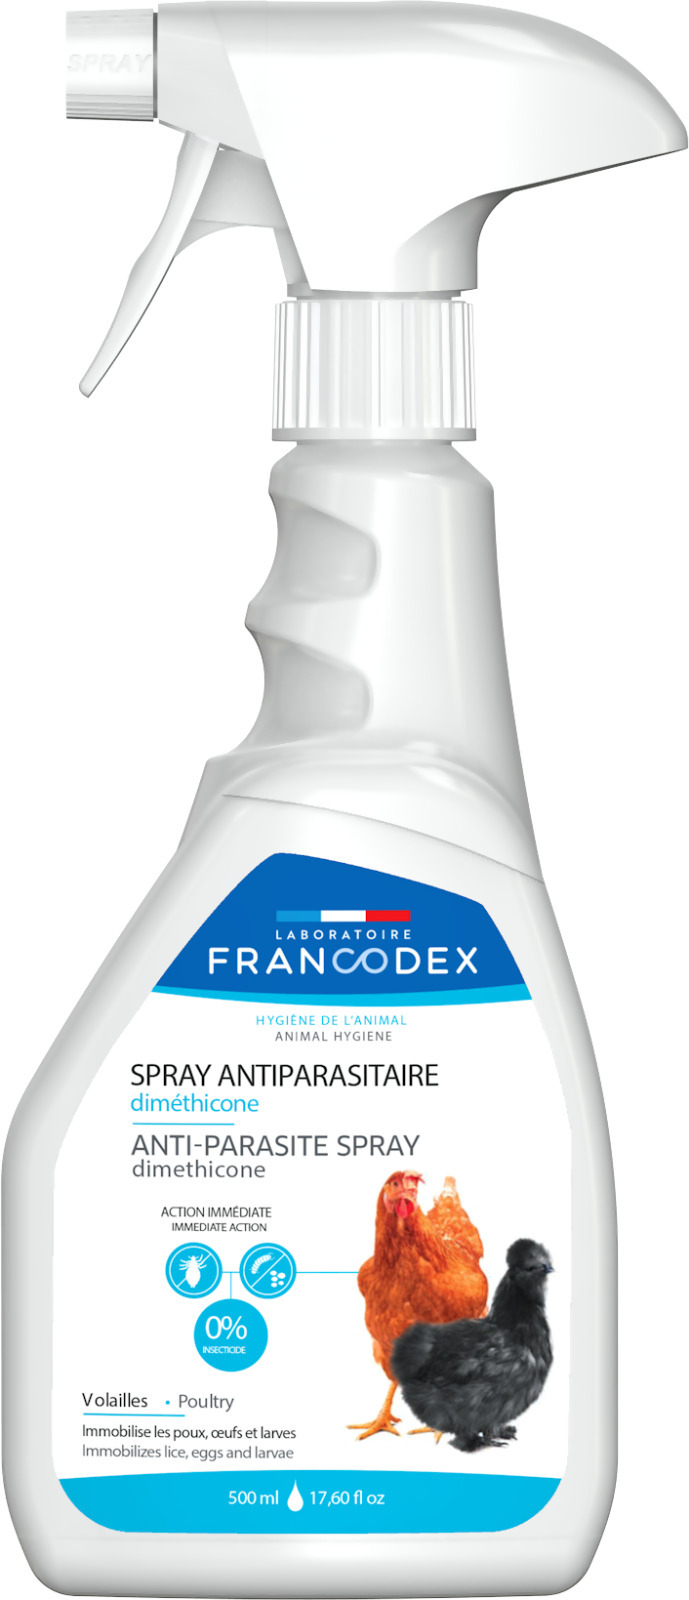 Spray tegen ongedierte voor gevogelte, met dimethicone, Francodex